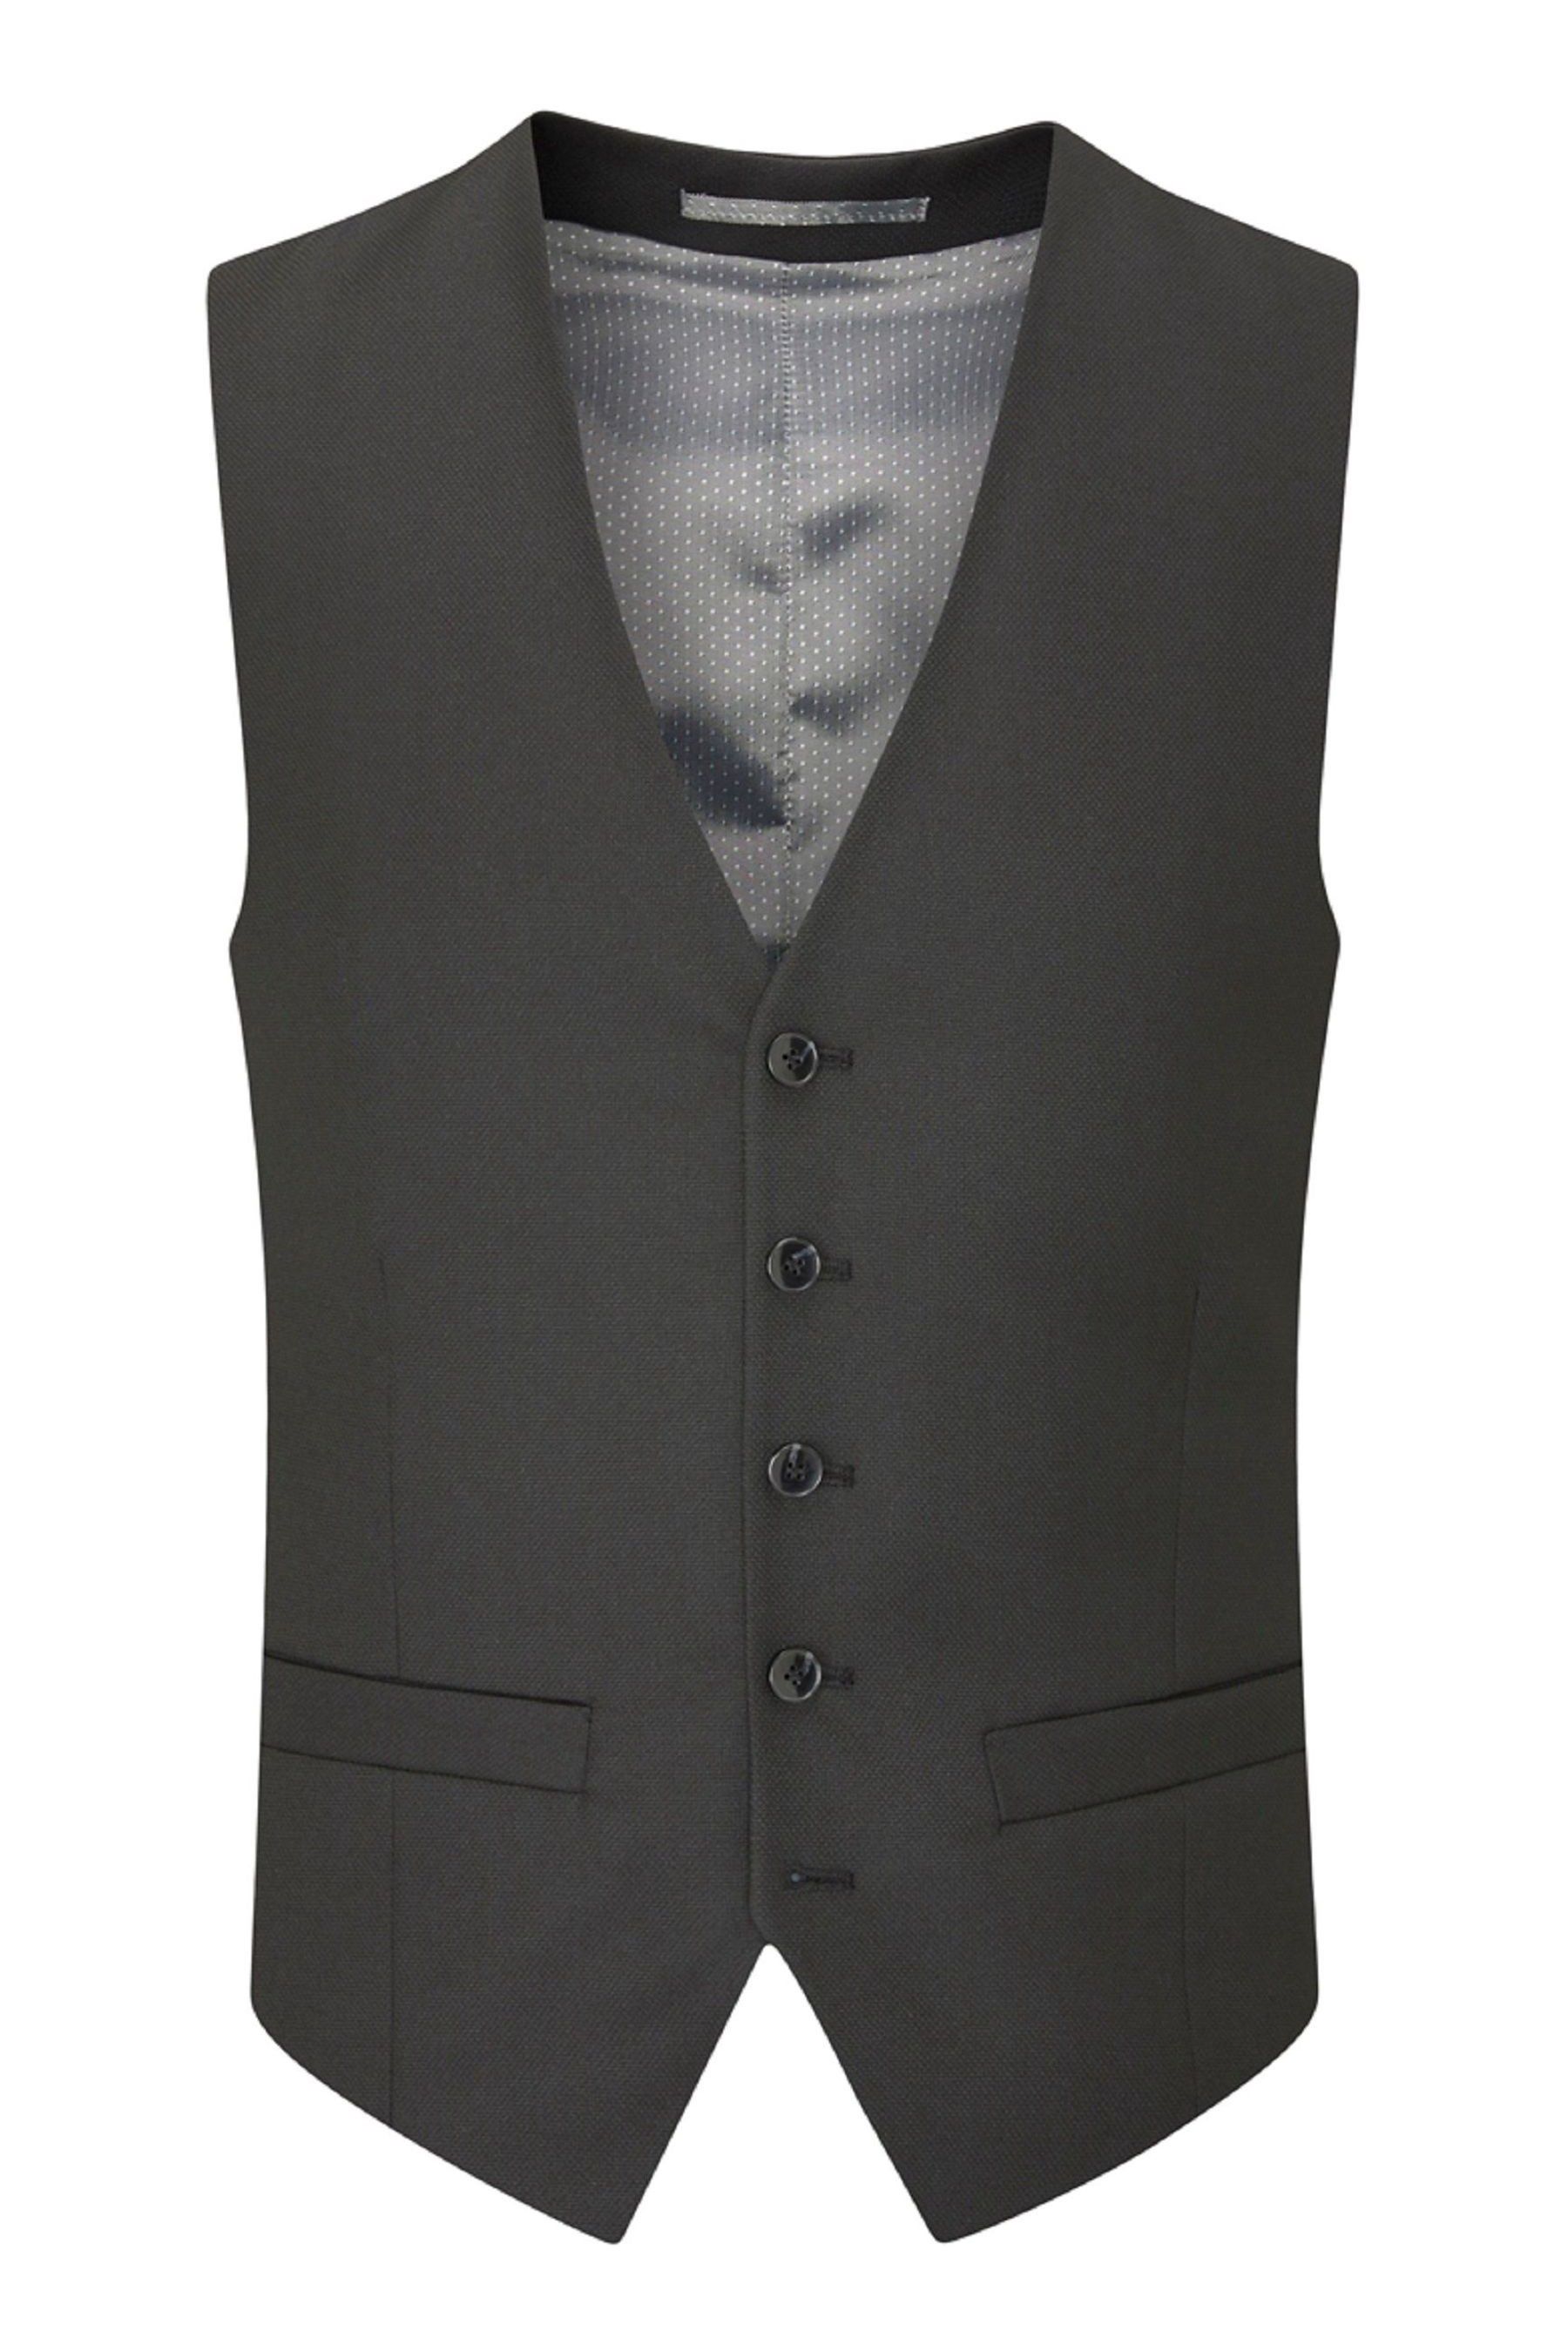 Skopes Montague Suit Waistcoat